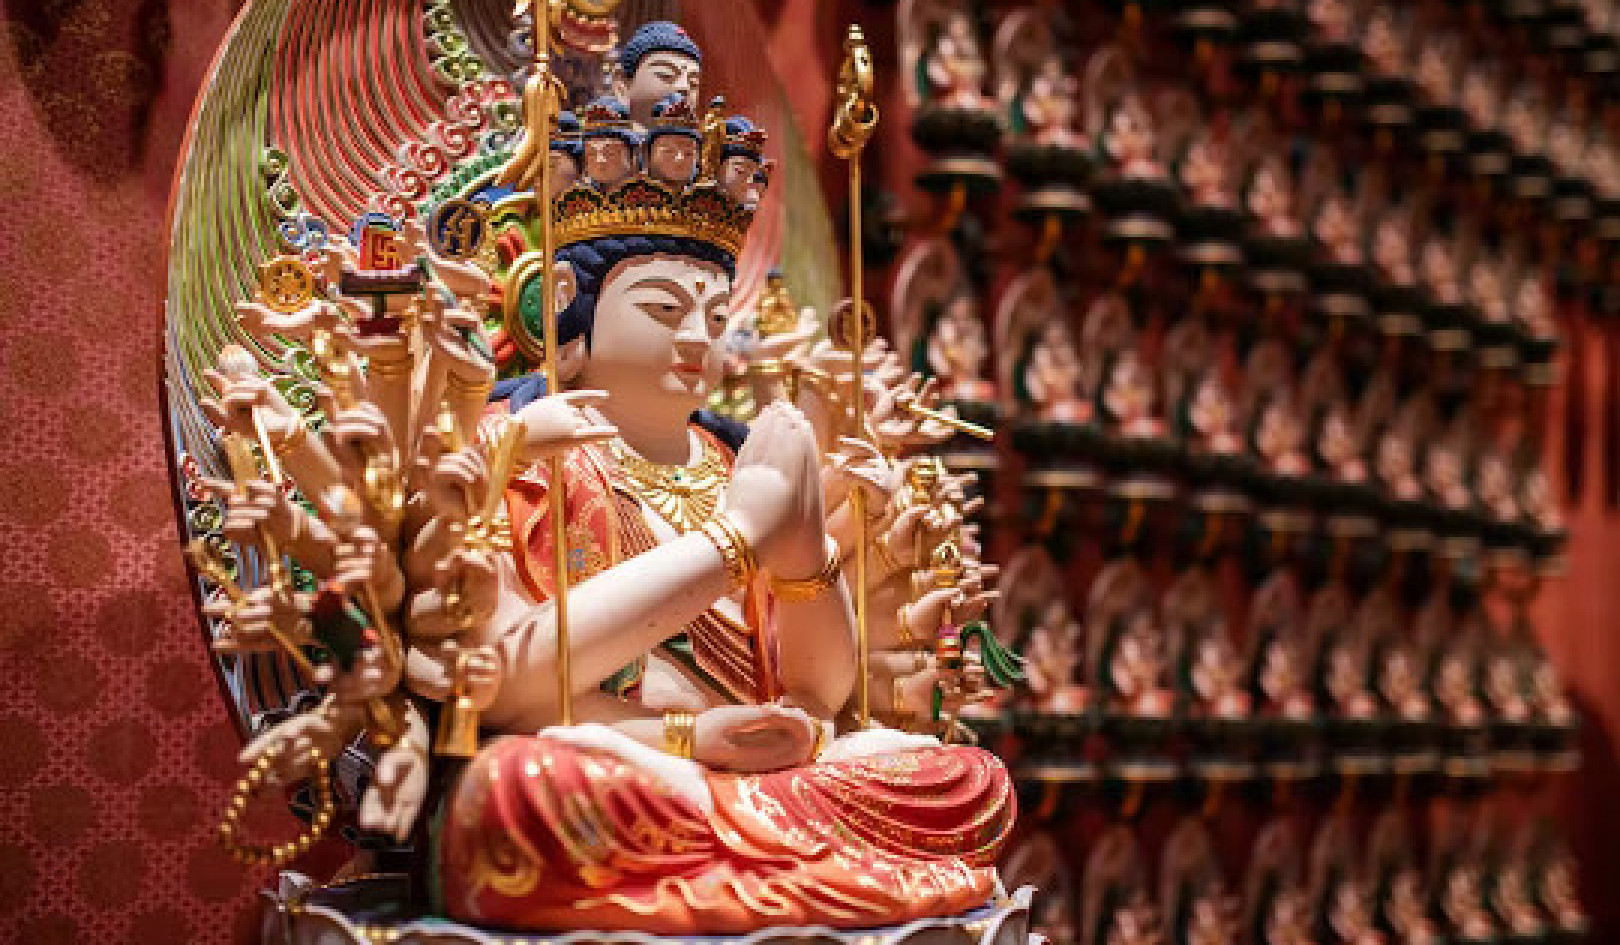 Ένας μελετητής του Βουδισμού εξηγεί τον Μποντισάτβα